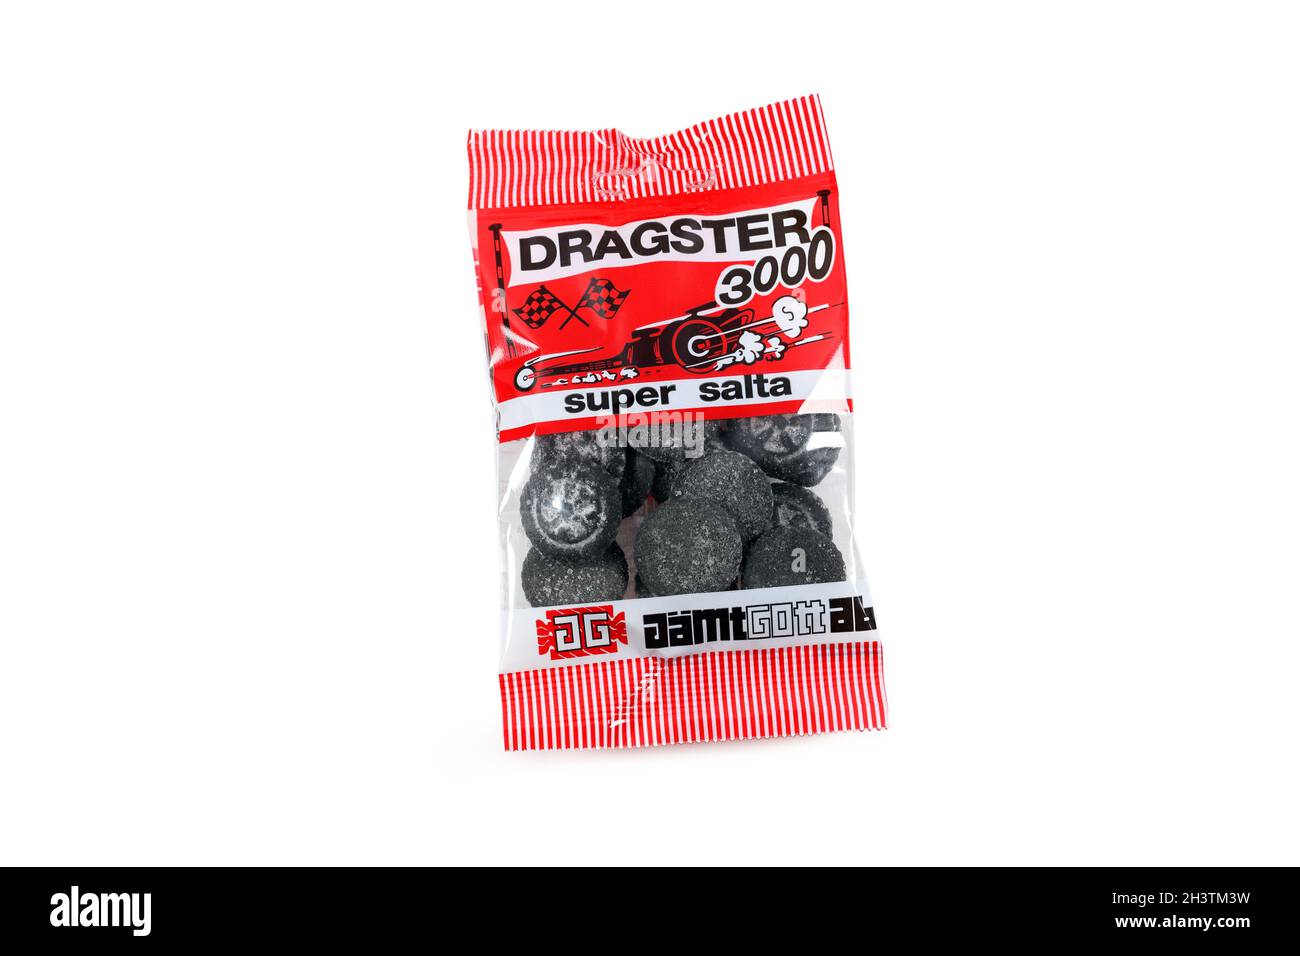 Un sac de bonbons suédois de réglisse salée Dragster 3000 de marque Jämtgott isolé sur fond blanc. Réglisse recouvert de chlorure d'ammonium. Banque D'Images